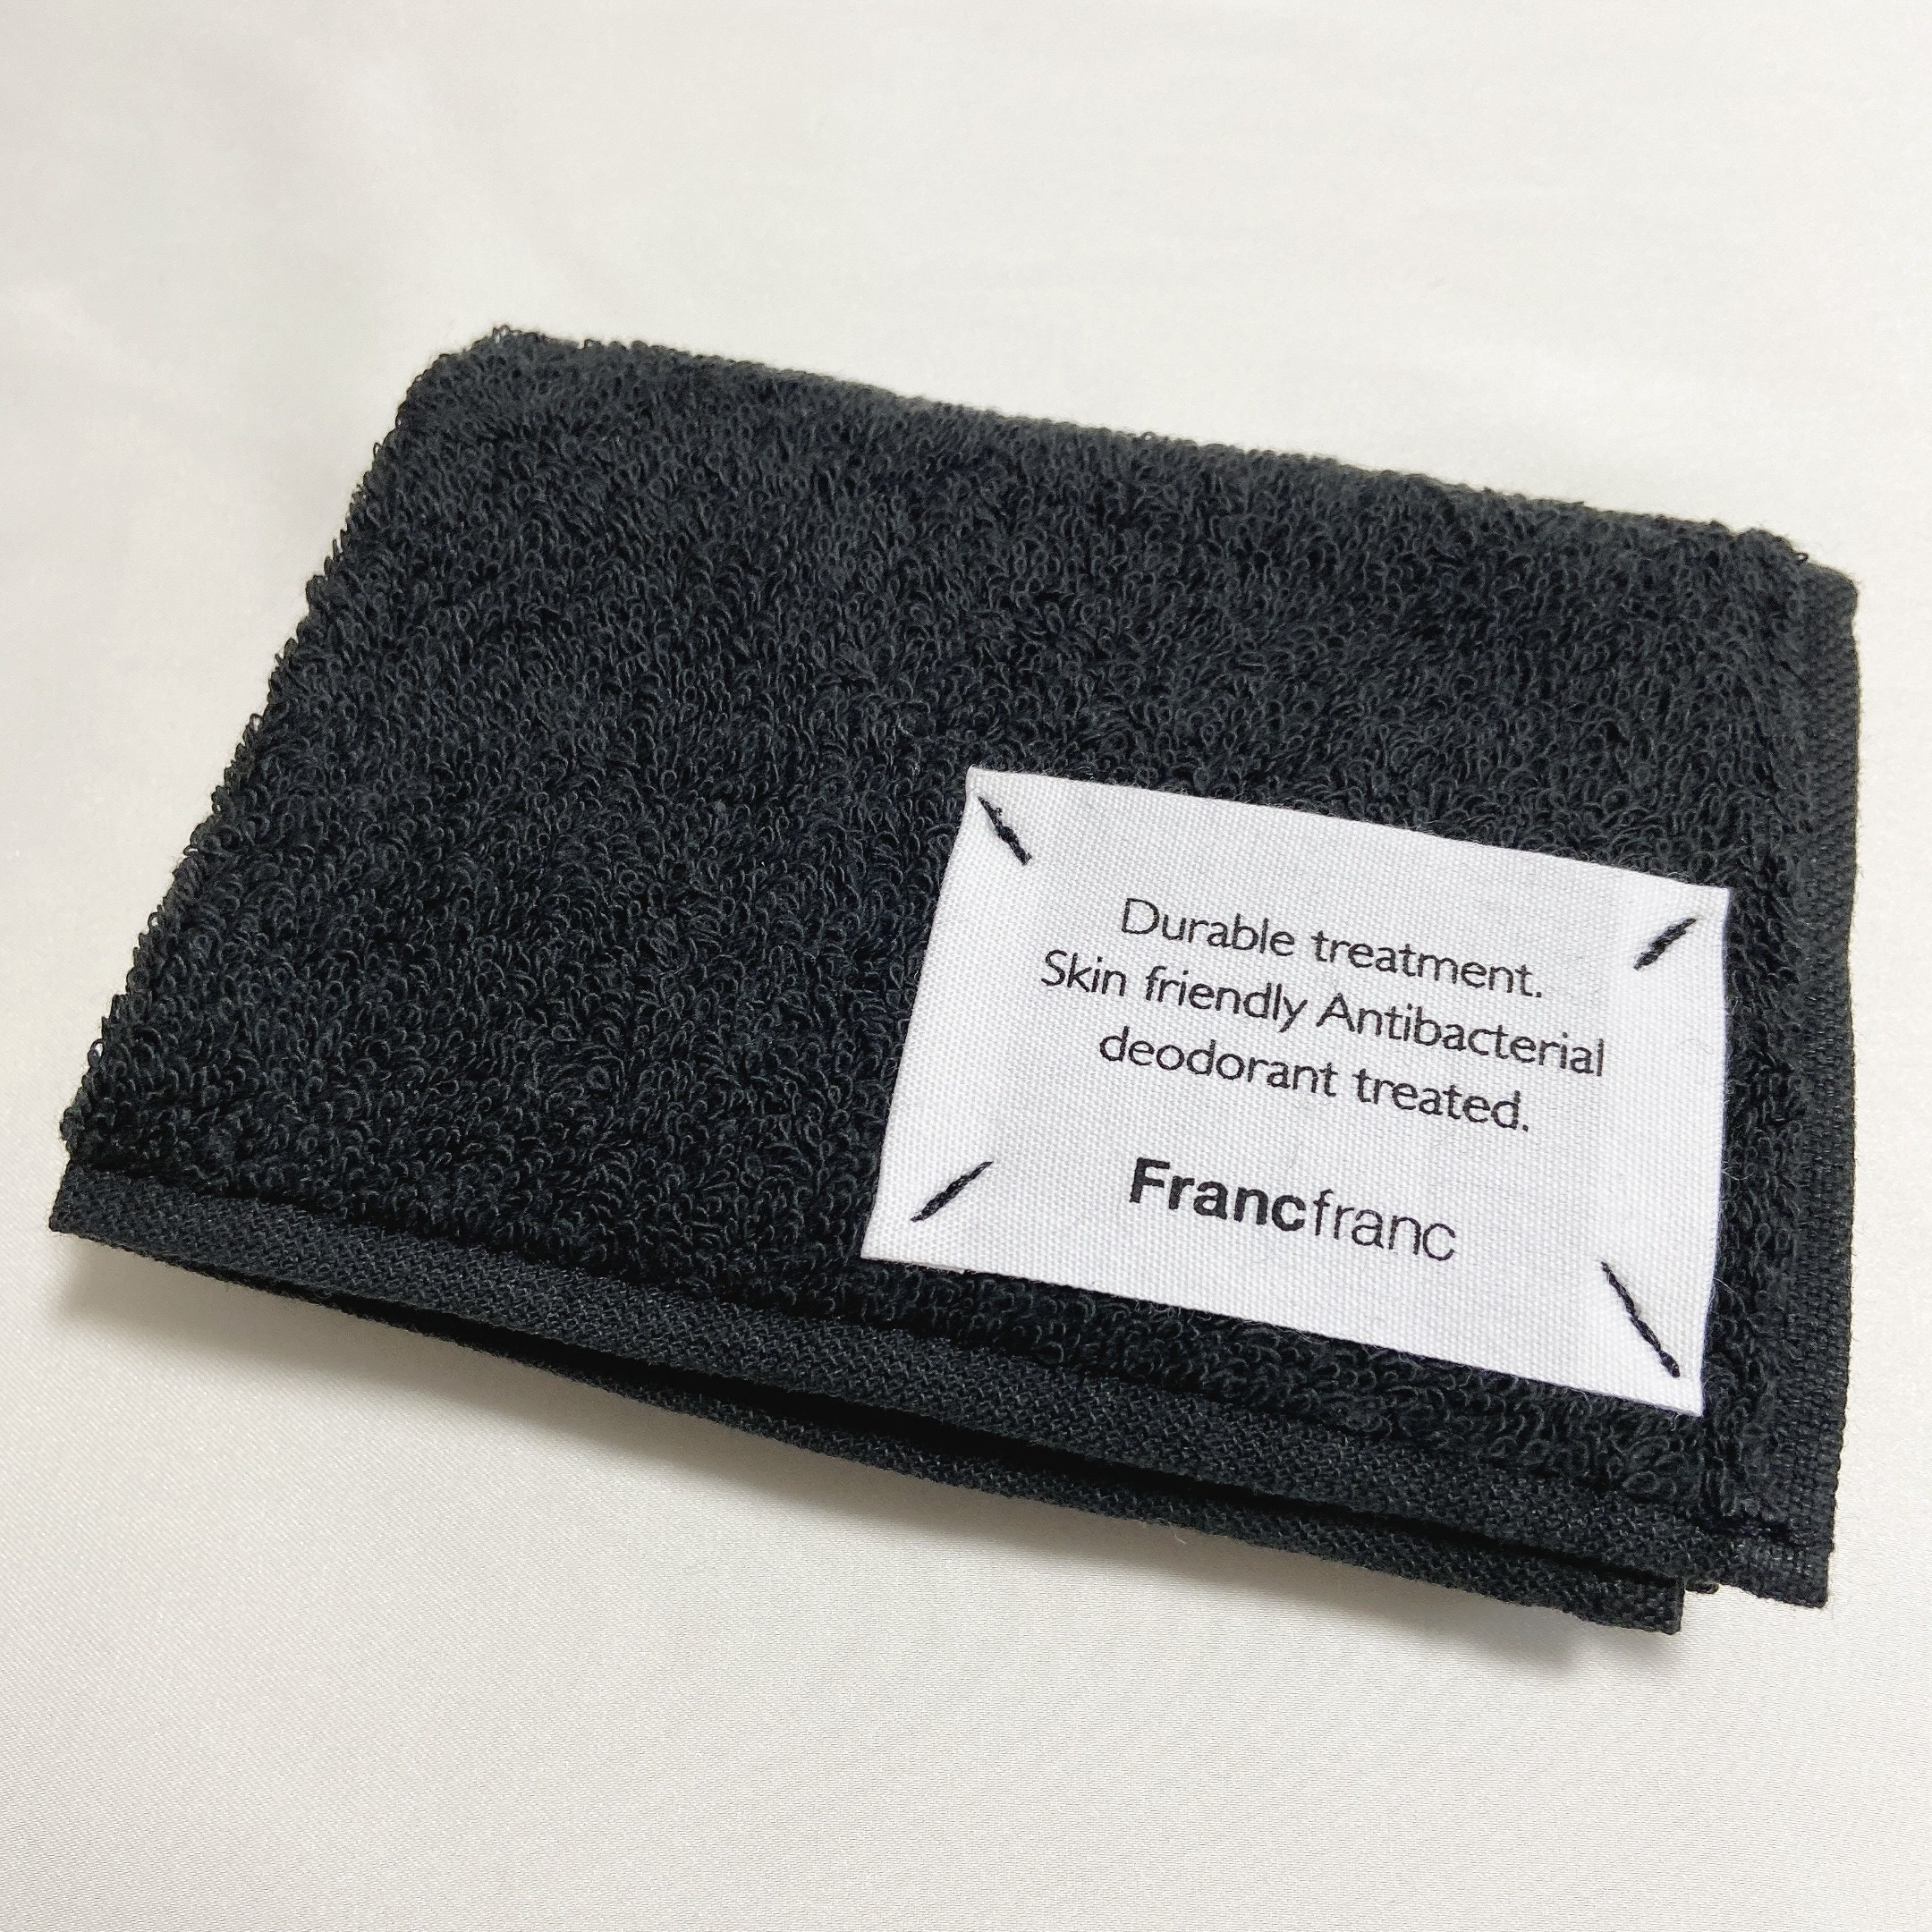 Francfranc（フランフラン）のオススメのケア用品「ルフティー ハンドケアセット ホワイトムスク ブラック」